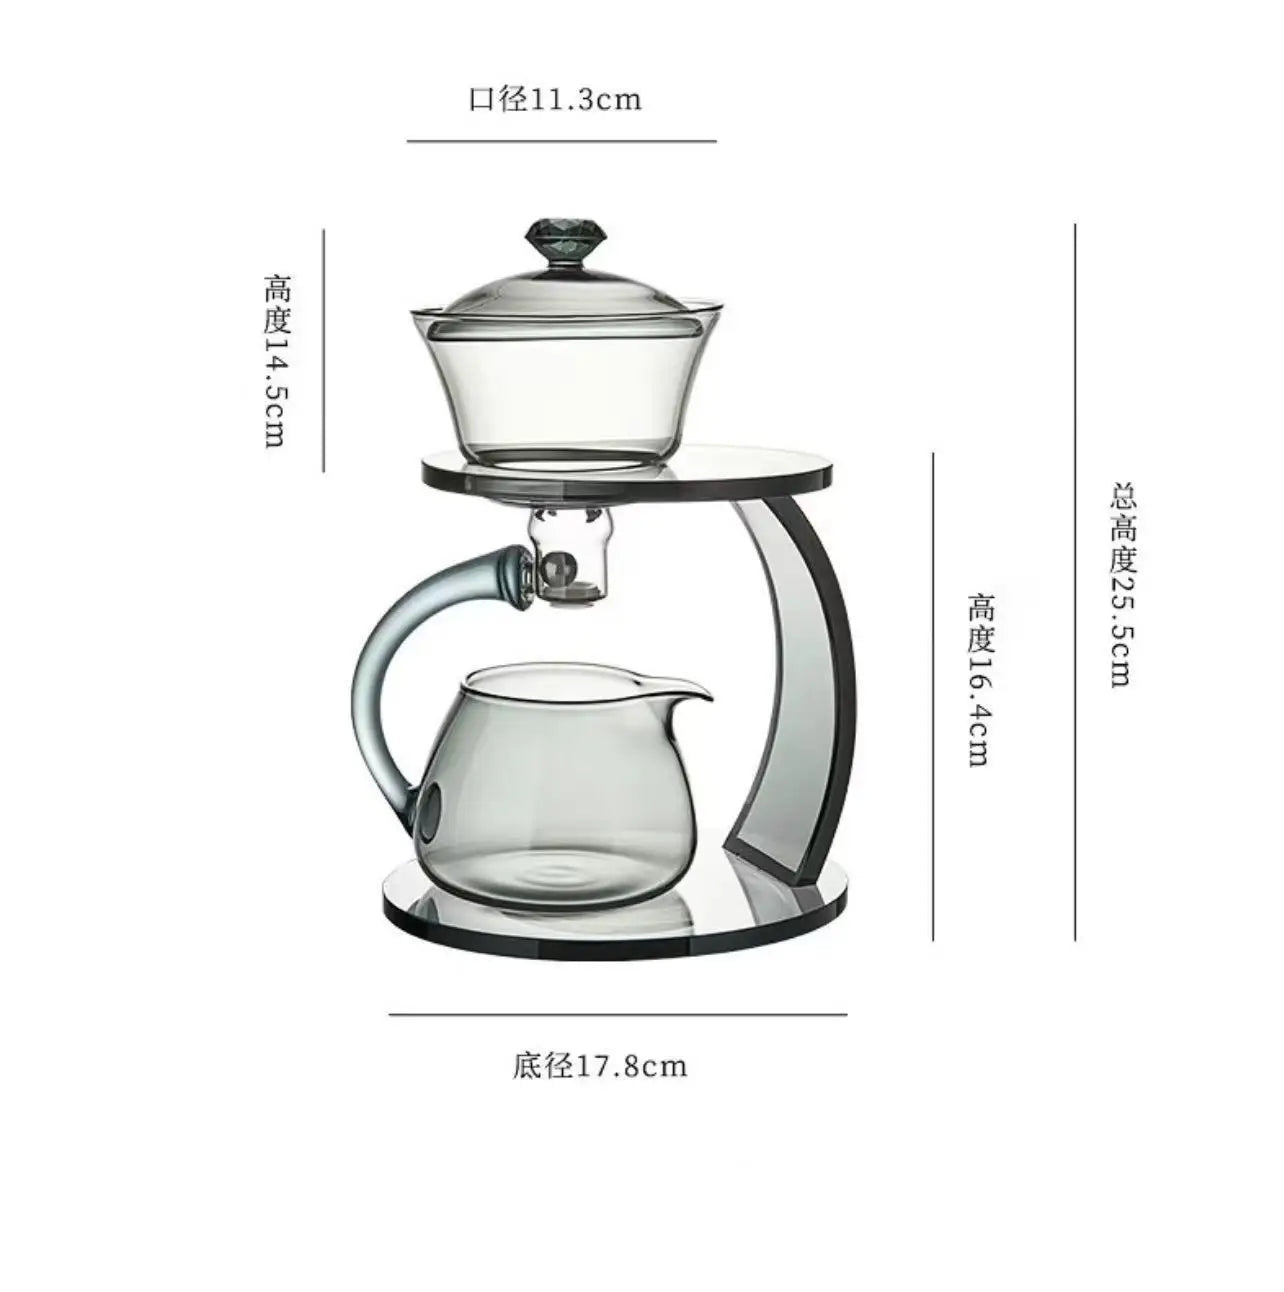 Thé à thé en verre à chaleur Diversion d'eau magnétique Bol de couvercle rotatif Automatique Témeau de thé de kungfu paresseux Boire